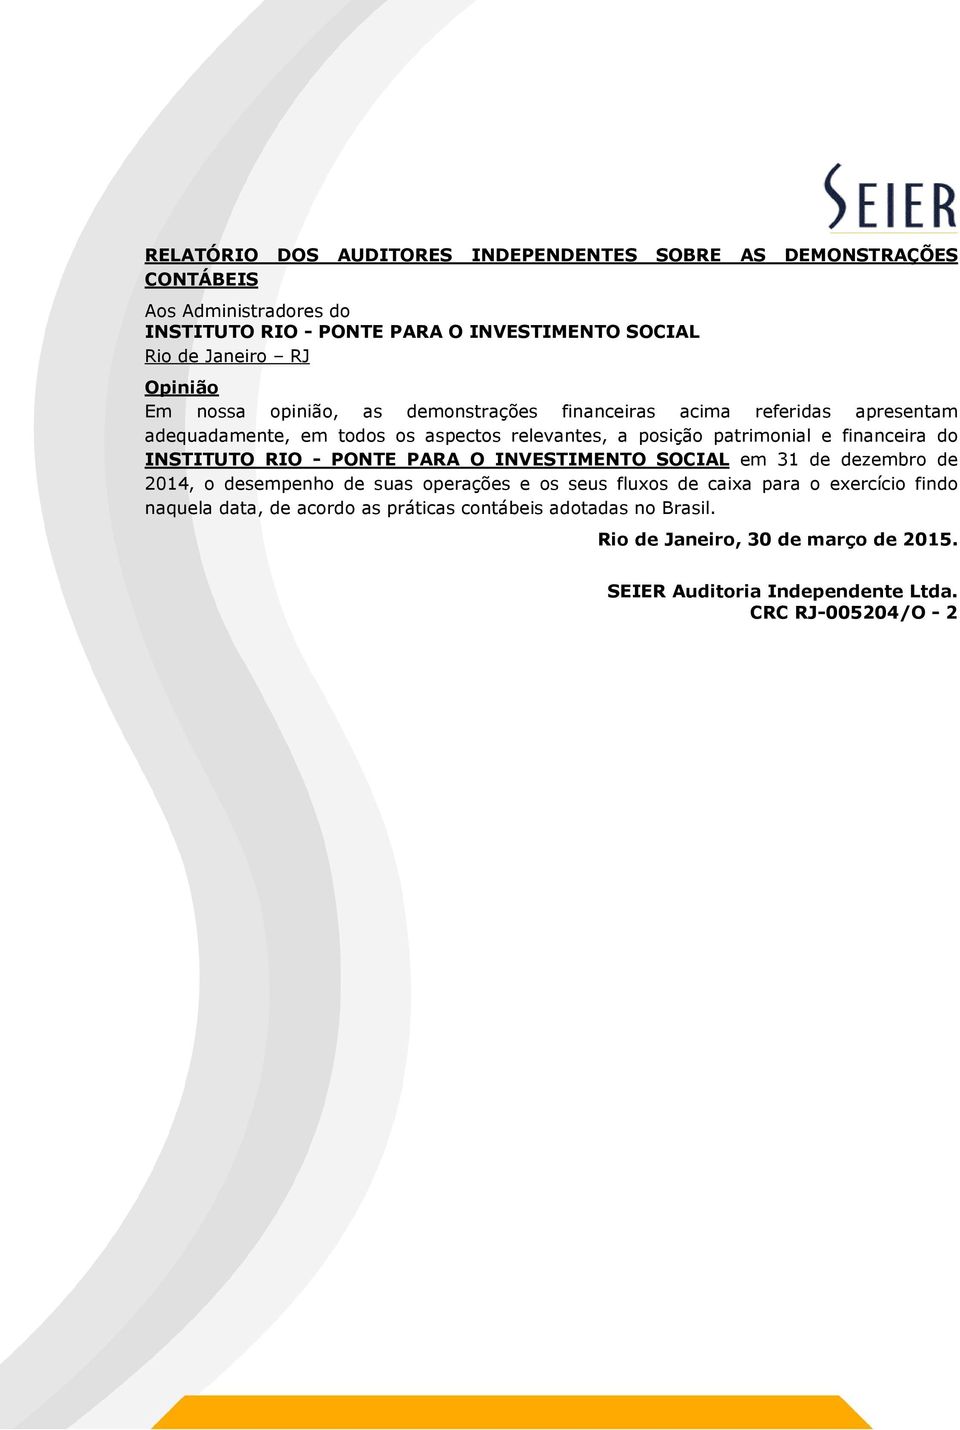 financeira do INSTITUTO RIO - PONTE PARA O INVESTIMENTO SOCIAL em 31 de dezembro de 2014, o desempenho de suas operações e os seus fluxos de caixa para o